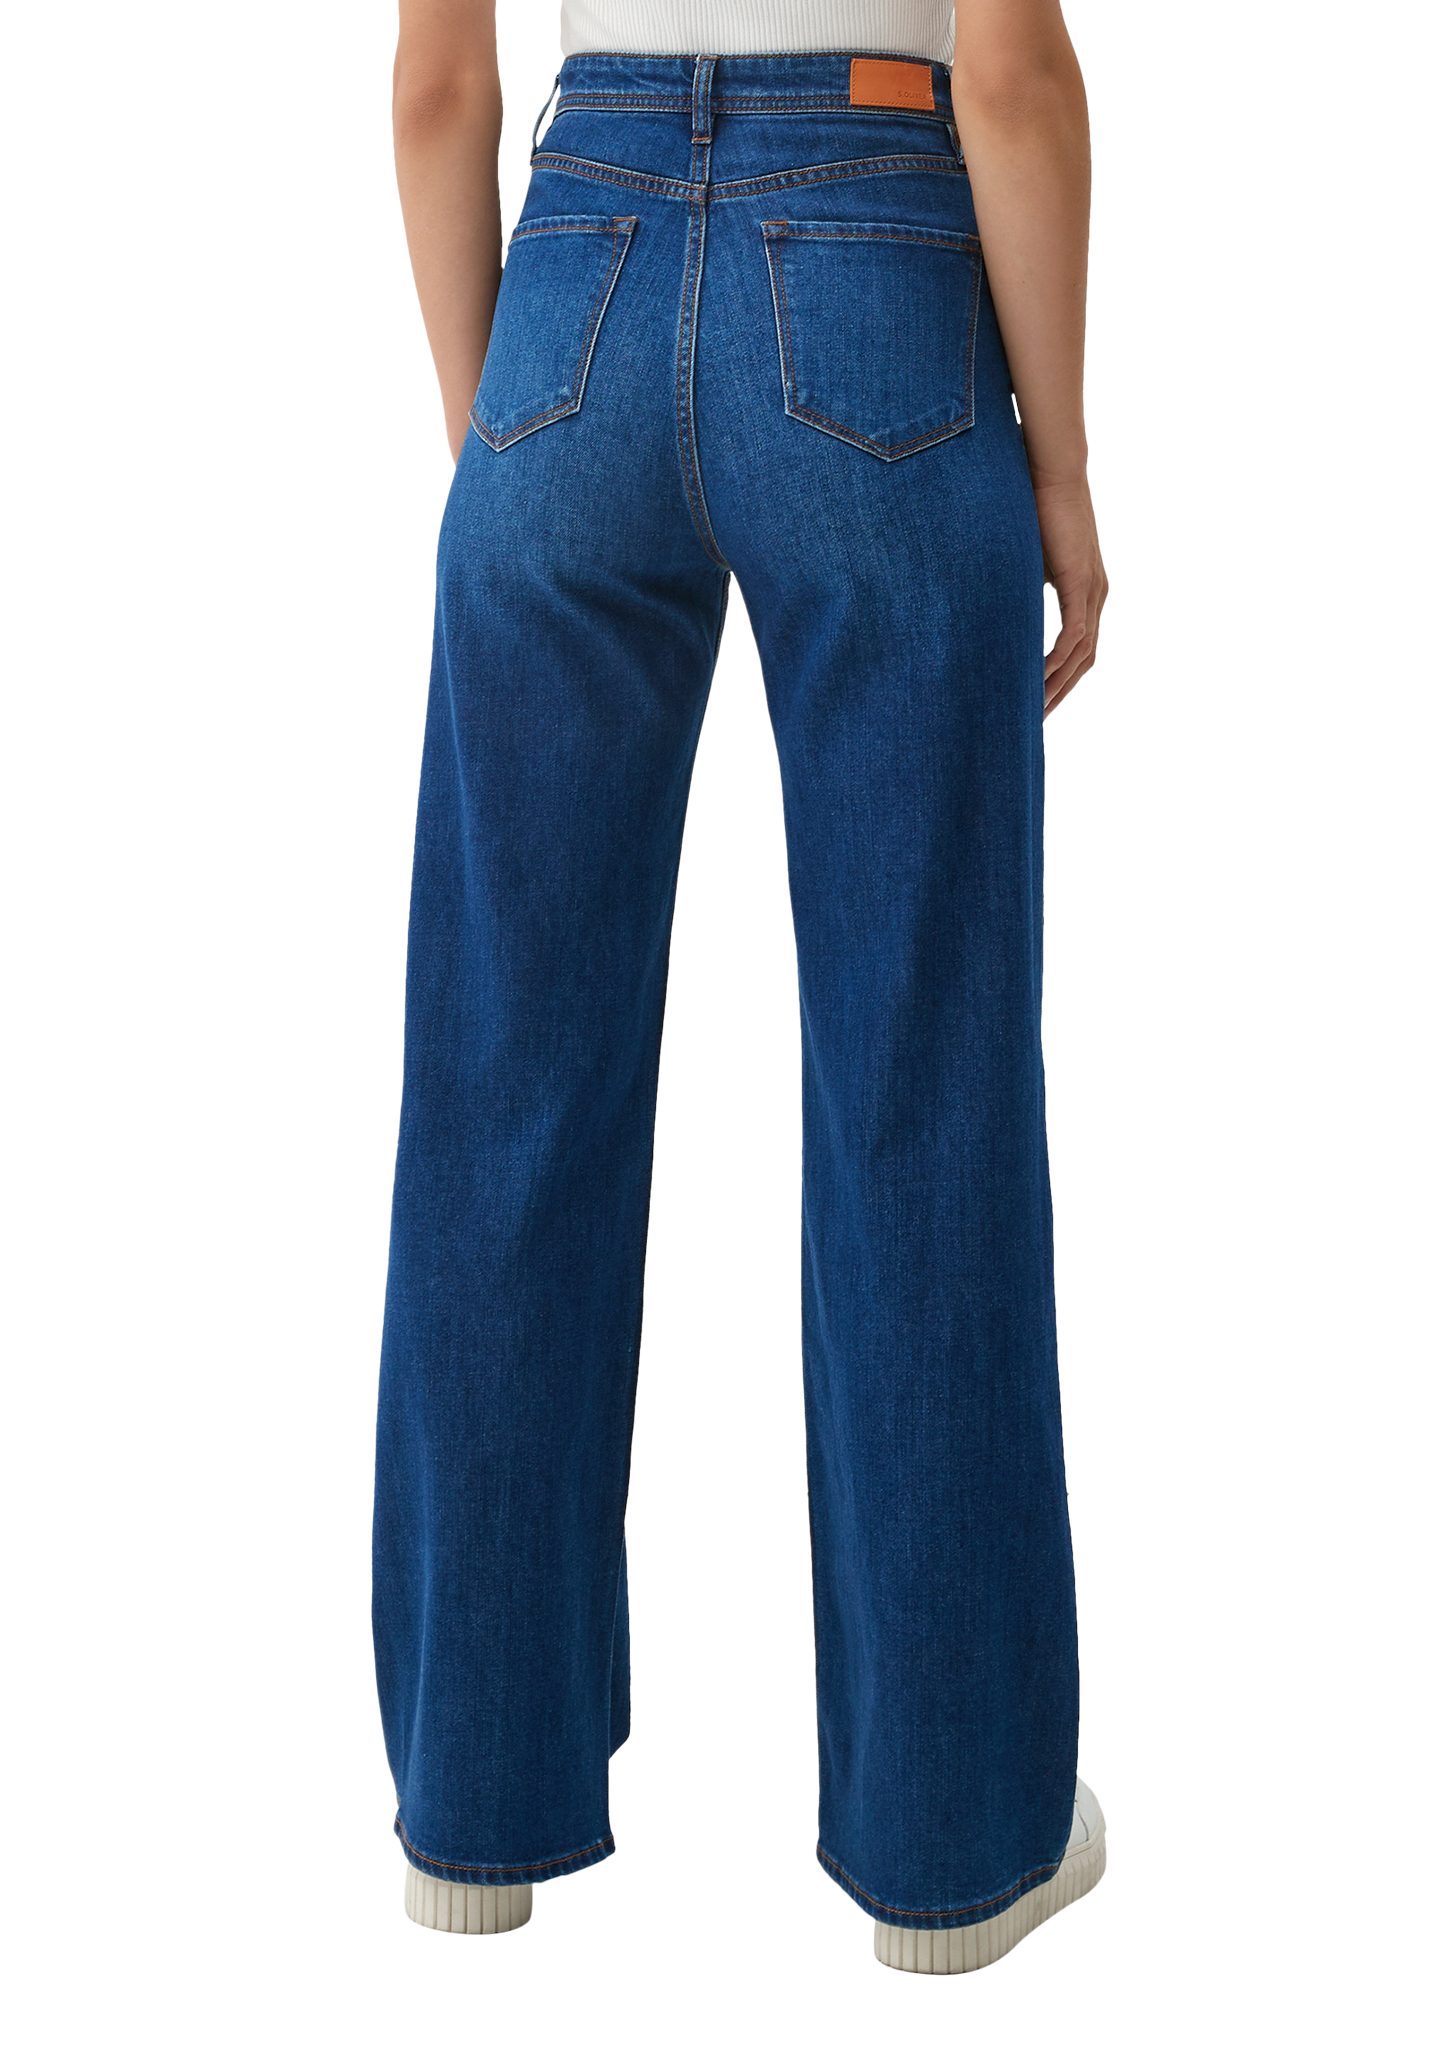 Suri Regular / Jeans Fit Leg Waschung / 5-Pocket-Jeans Rise s.Oliver High Super / Wide